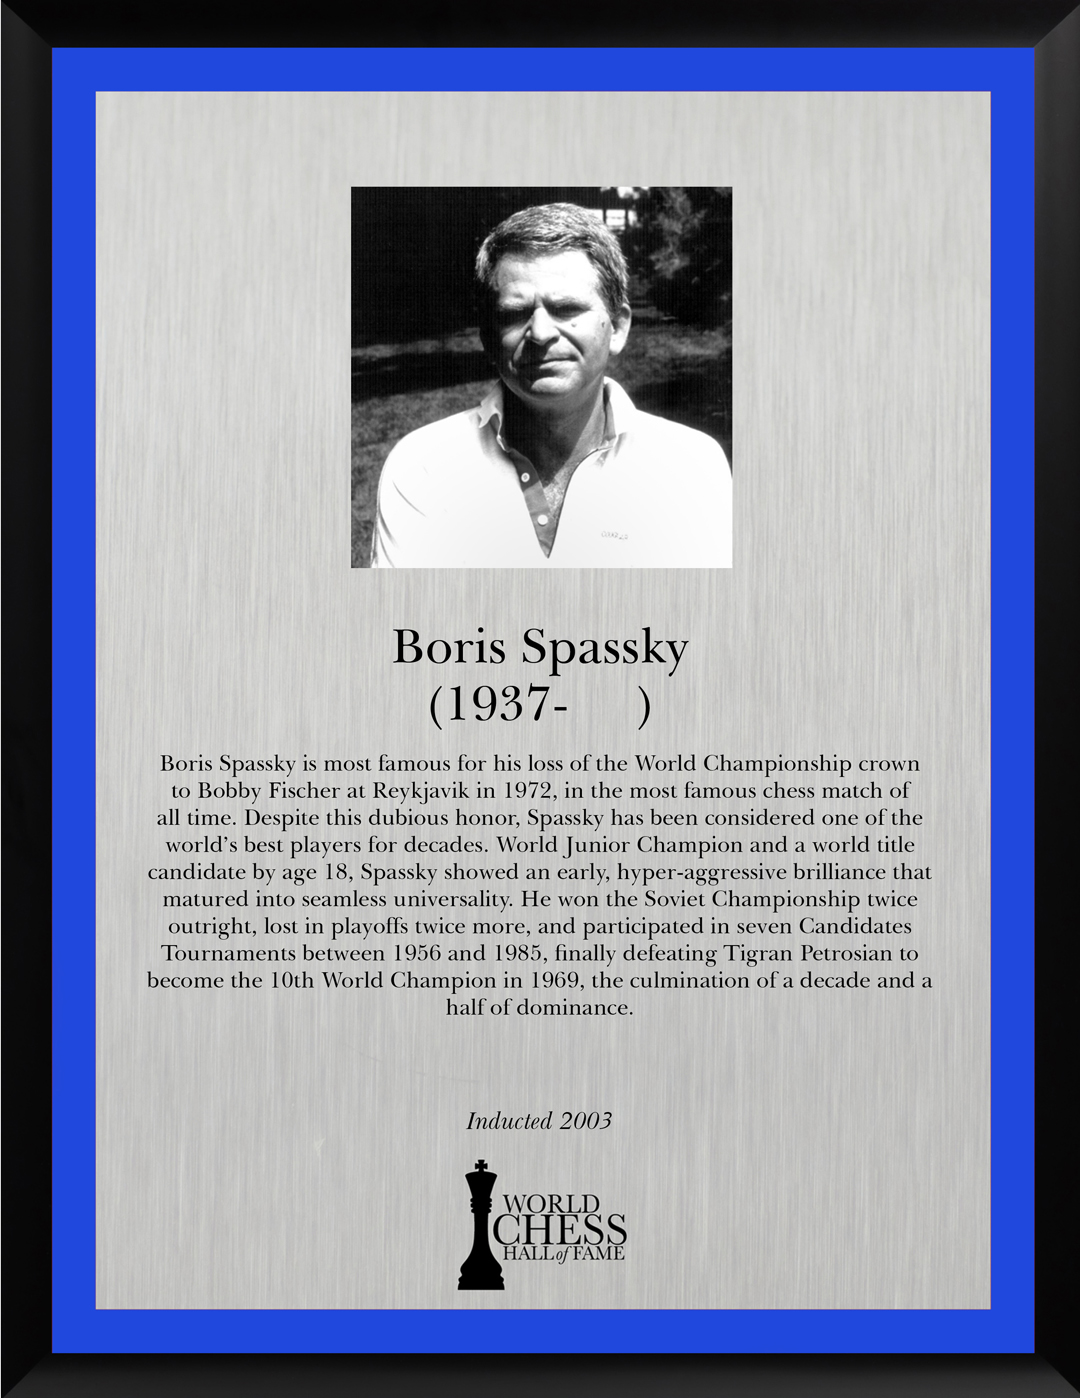 Boris Spassky's 80th birthday